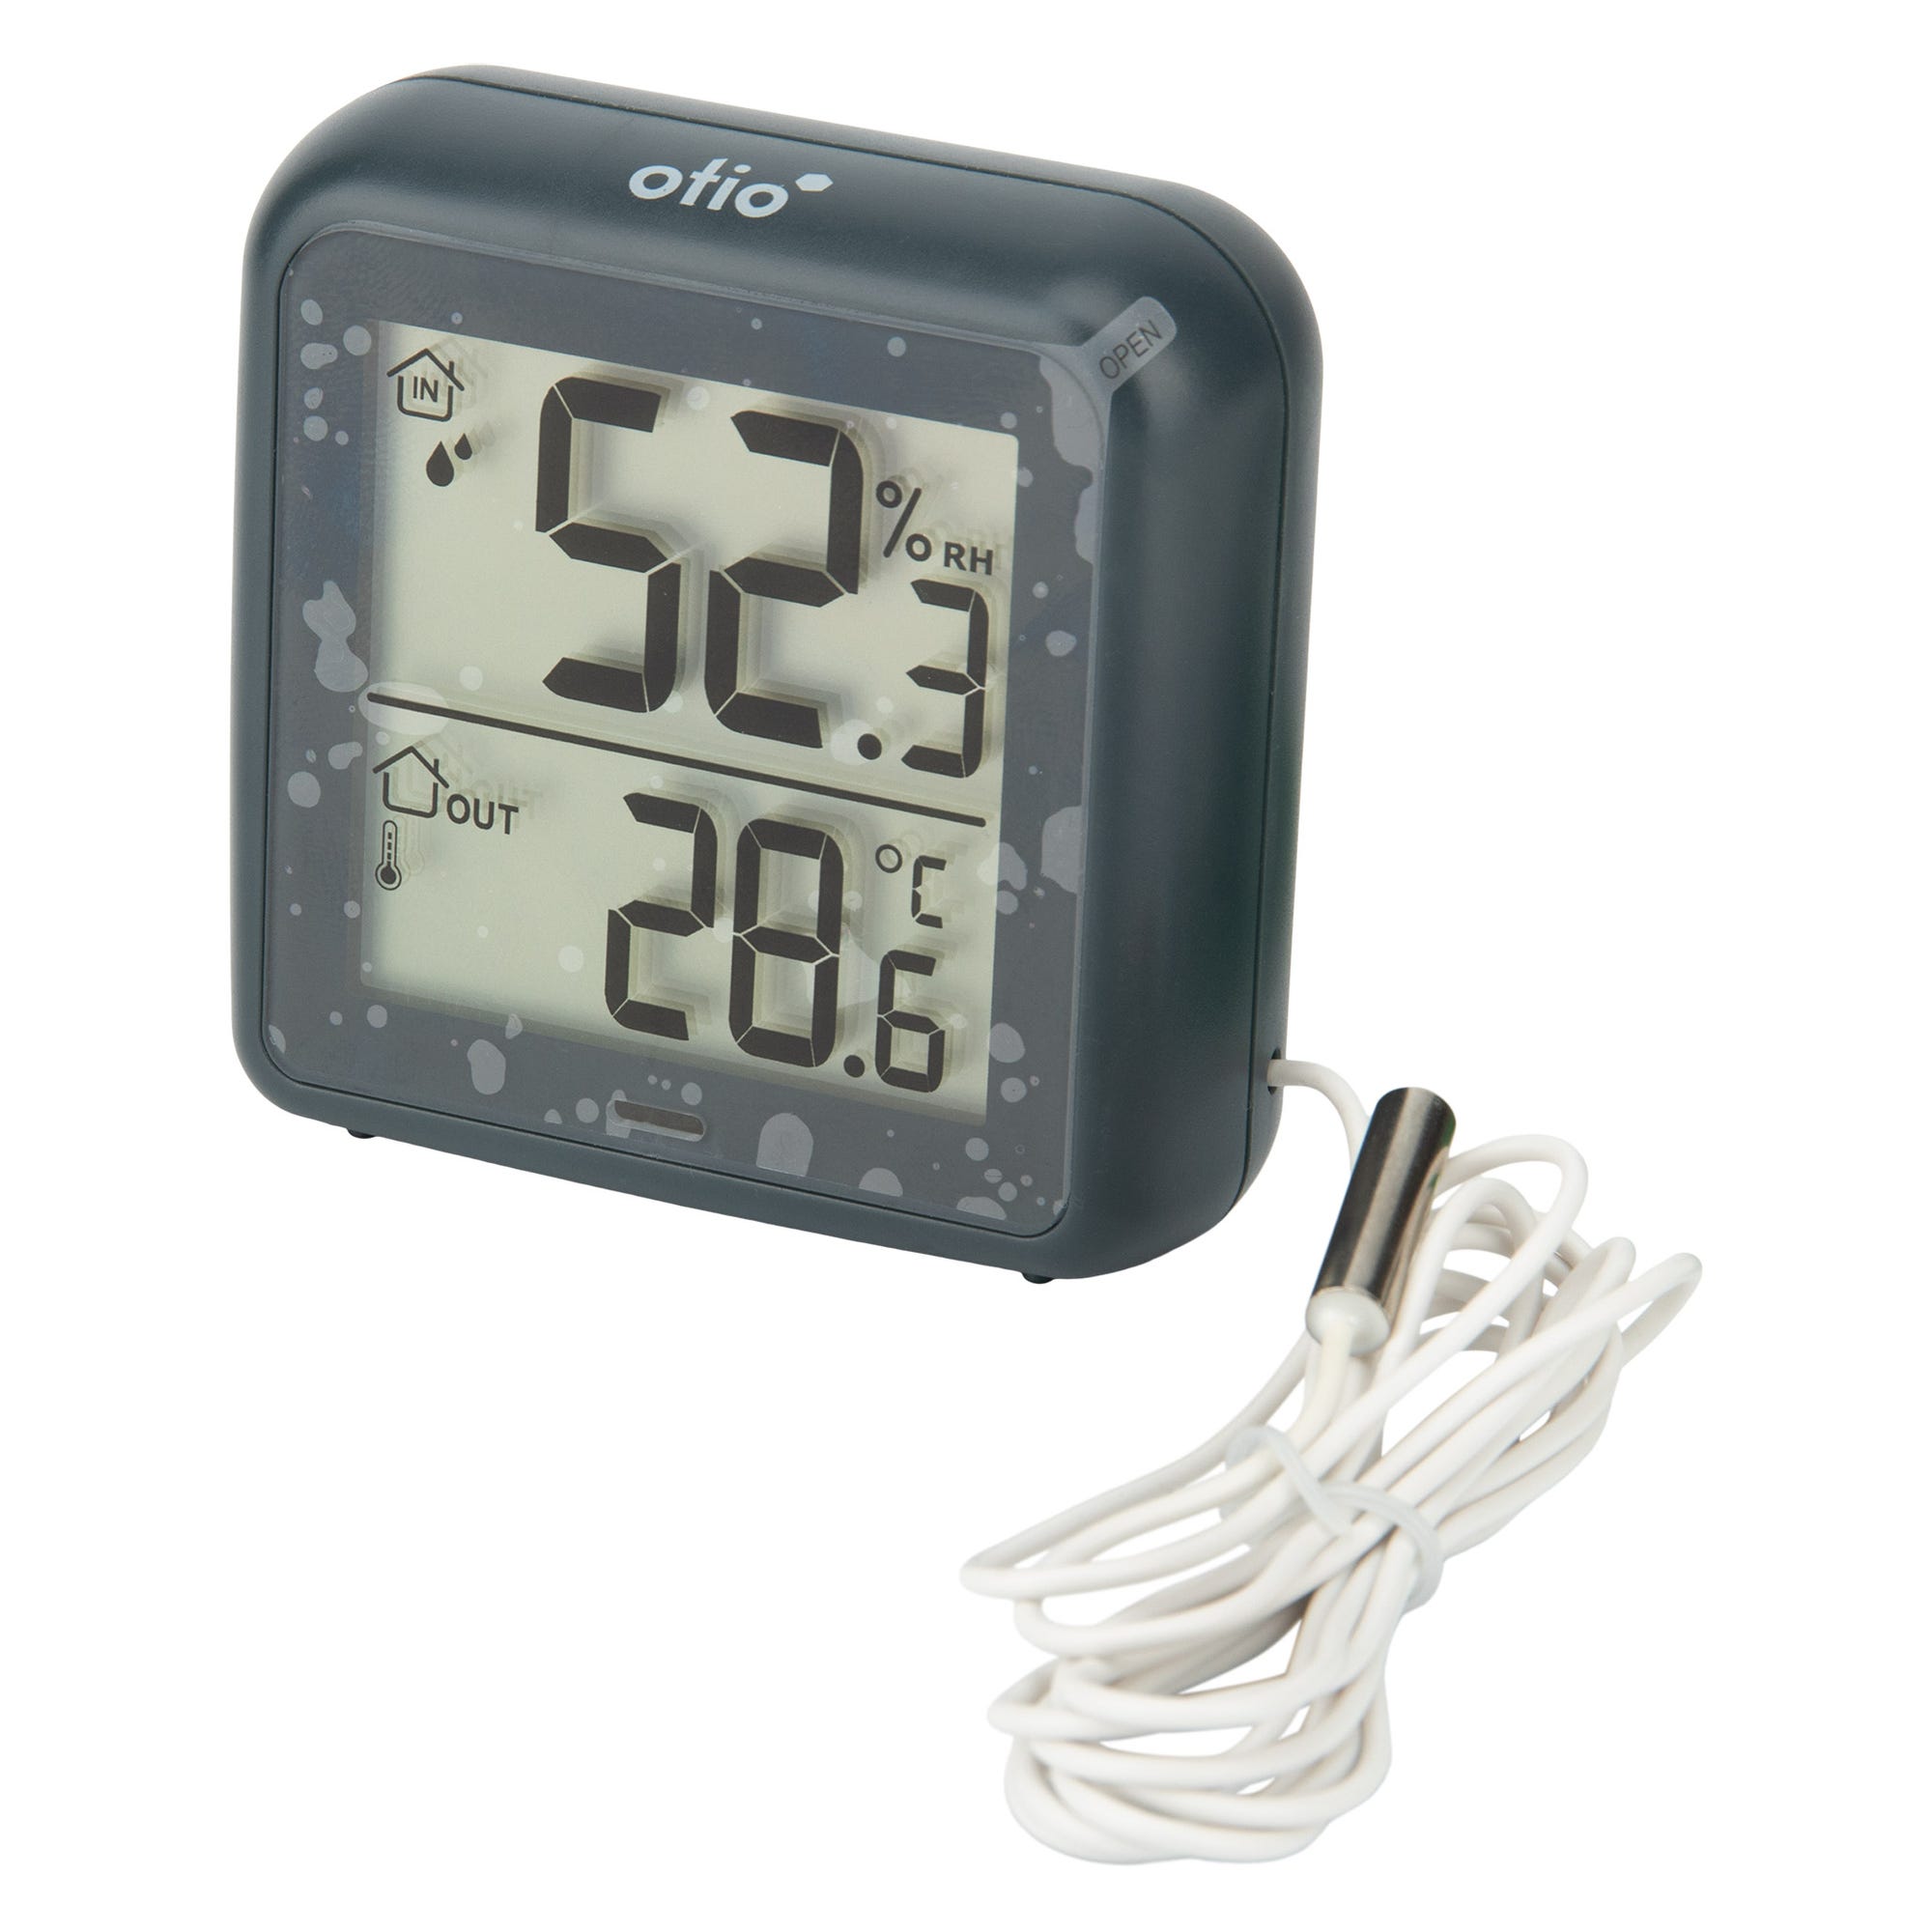 Thermomètre –hygromètre à sonde de température filaire gris anthracite - Otio 2